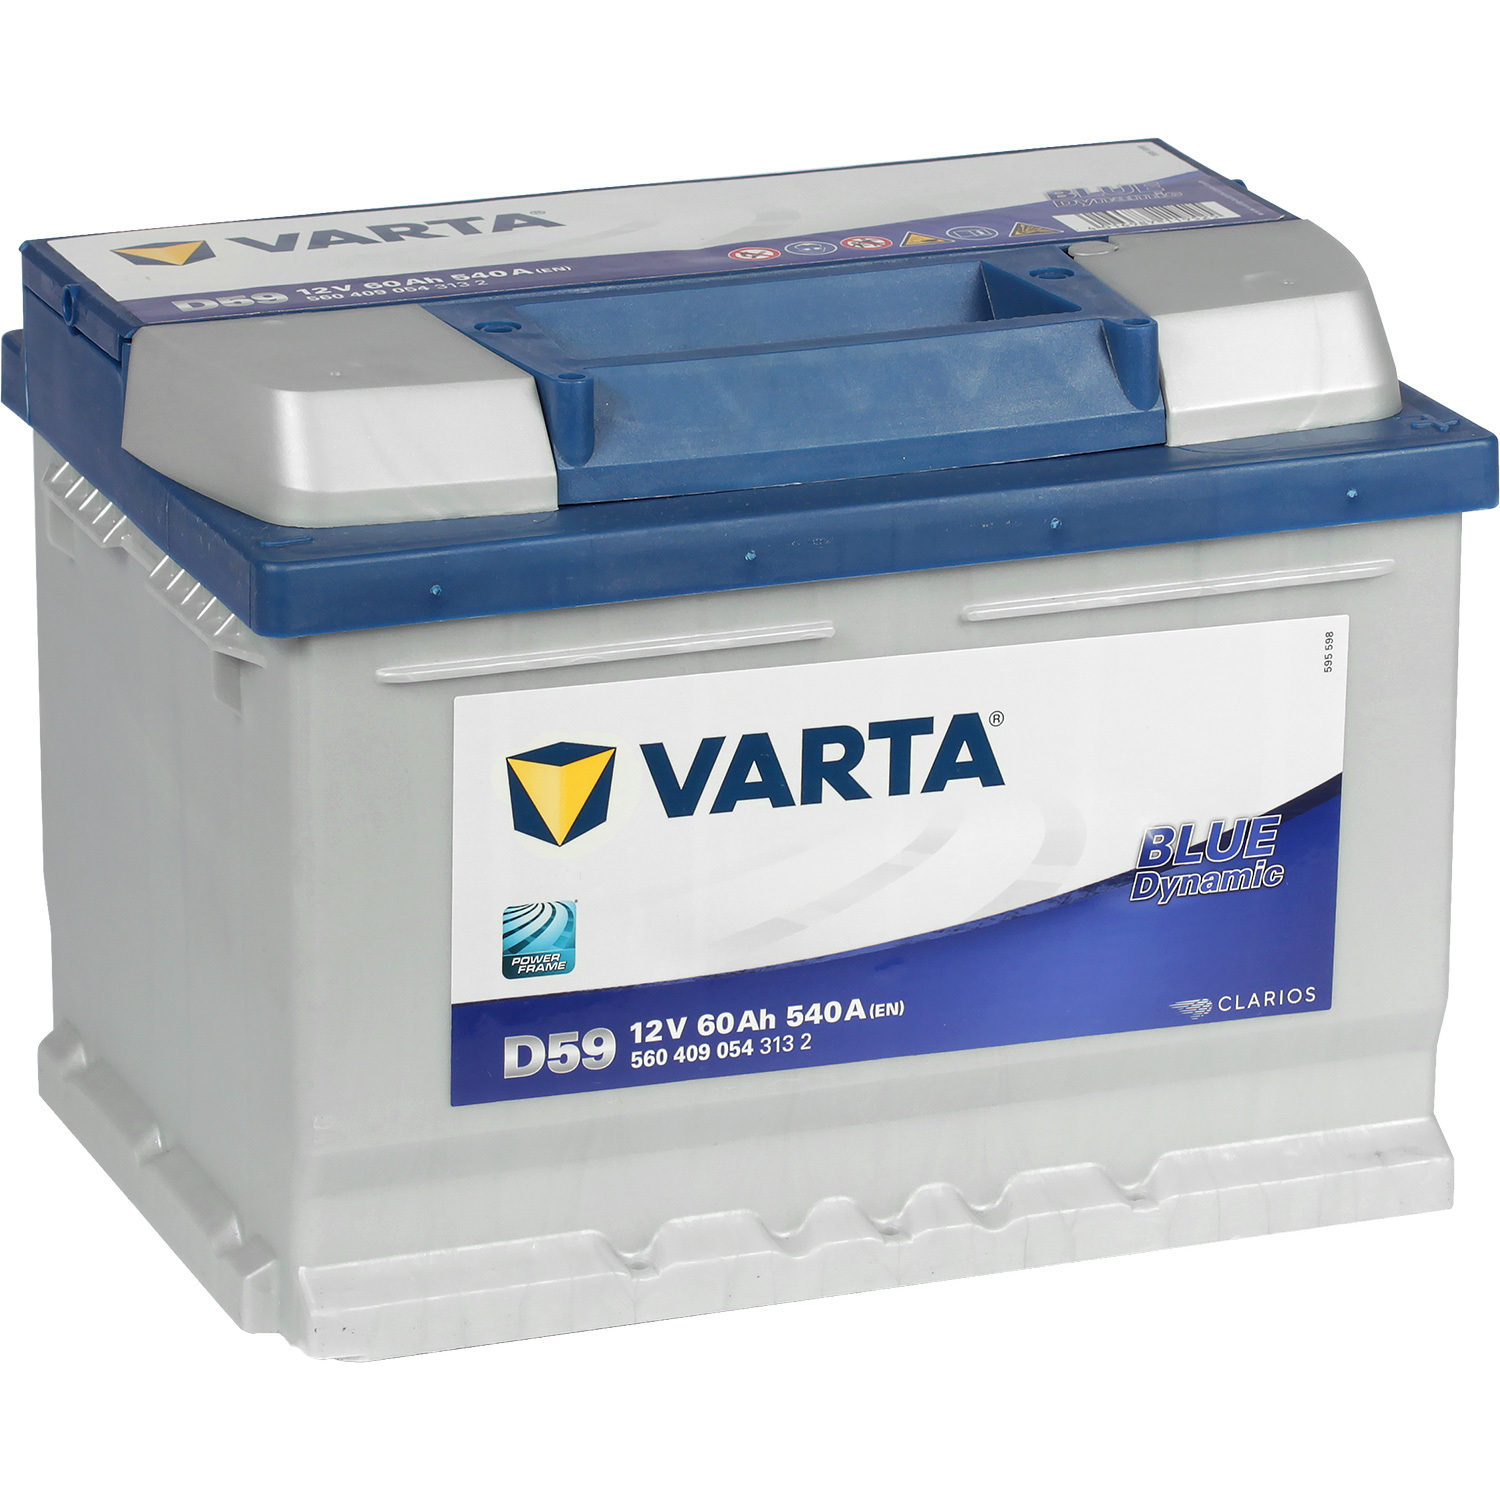 Varta Автомобильный аккумулятор Varta Blue Dynamic D59 60 Ач обратная полярность LB2 energizer автомобильный аккумулятор energizer 60 ач обратная полярность lb2